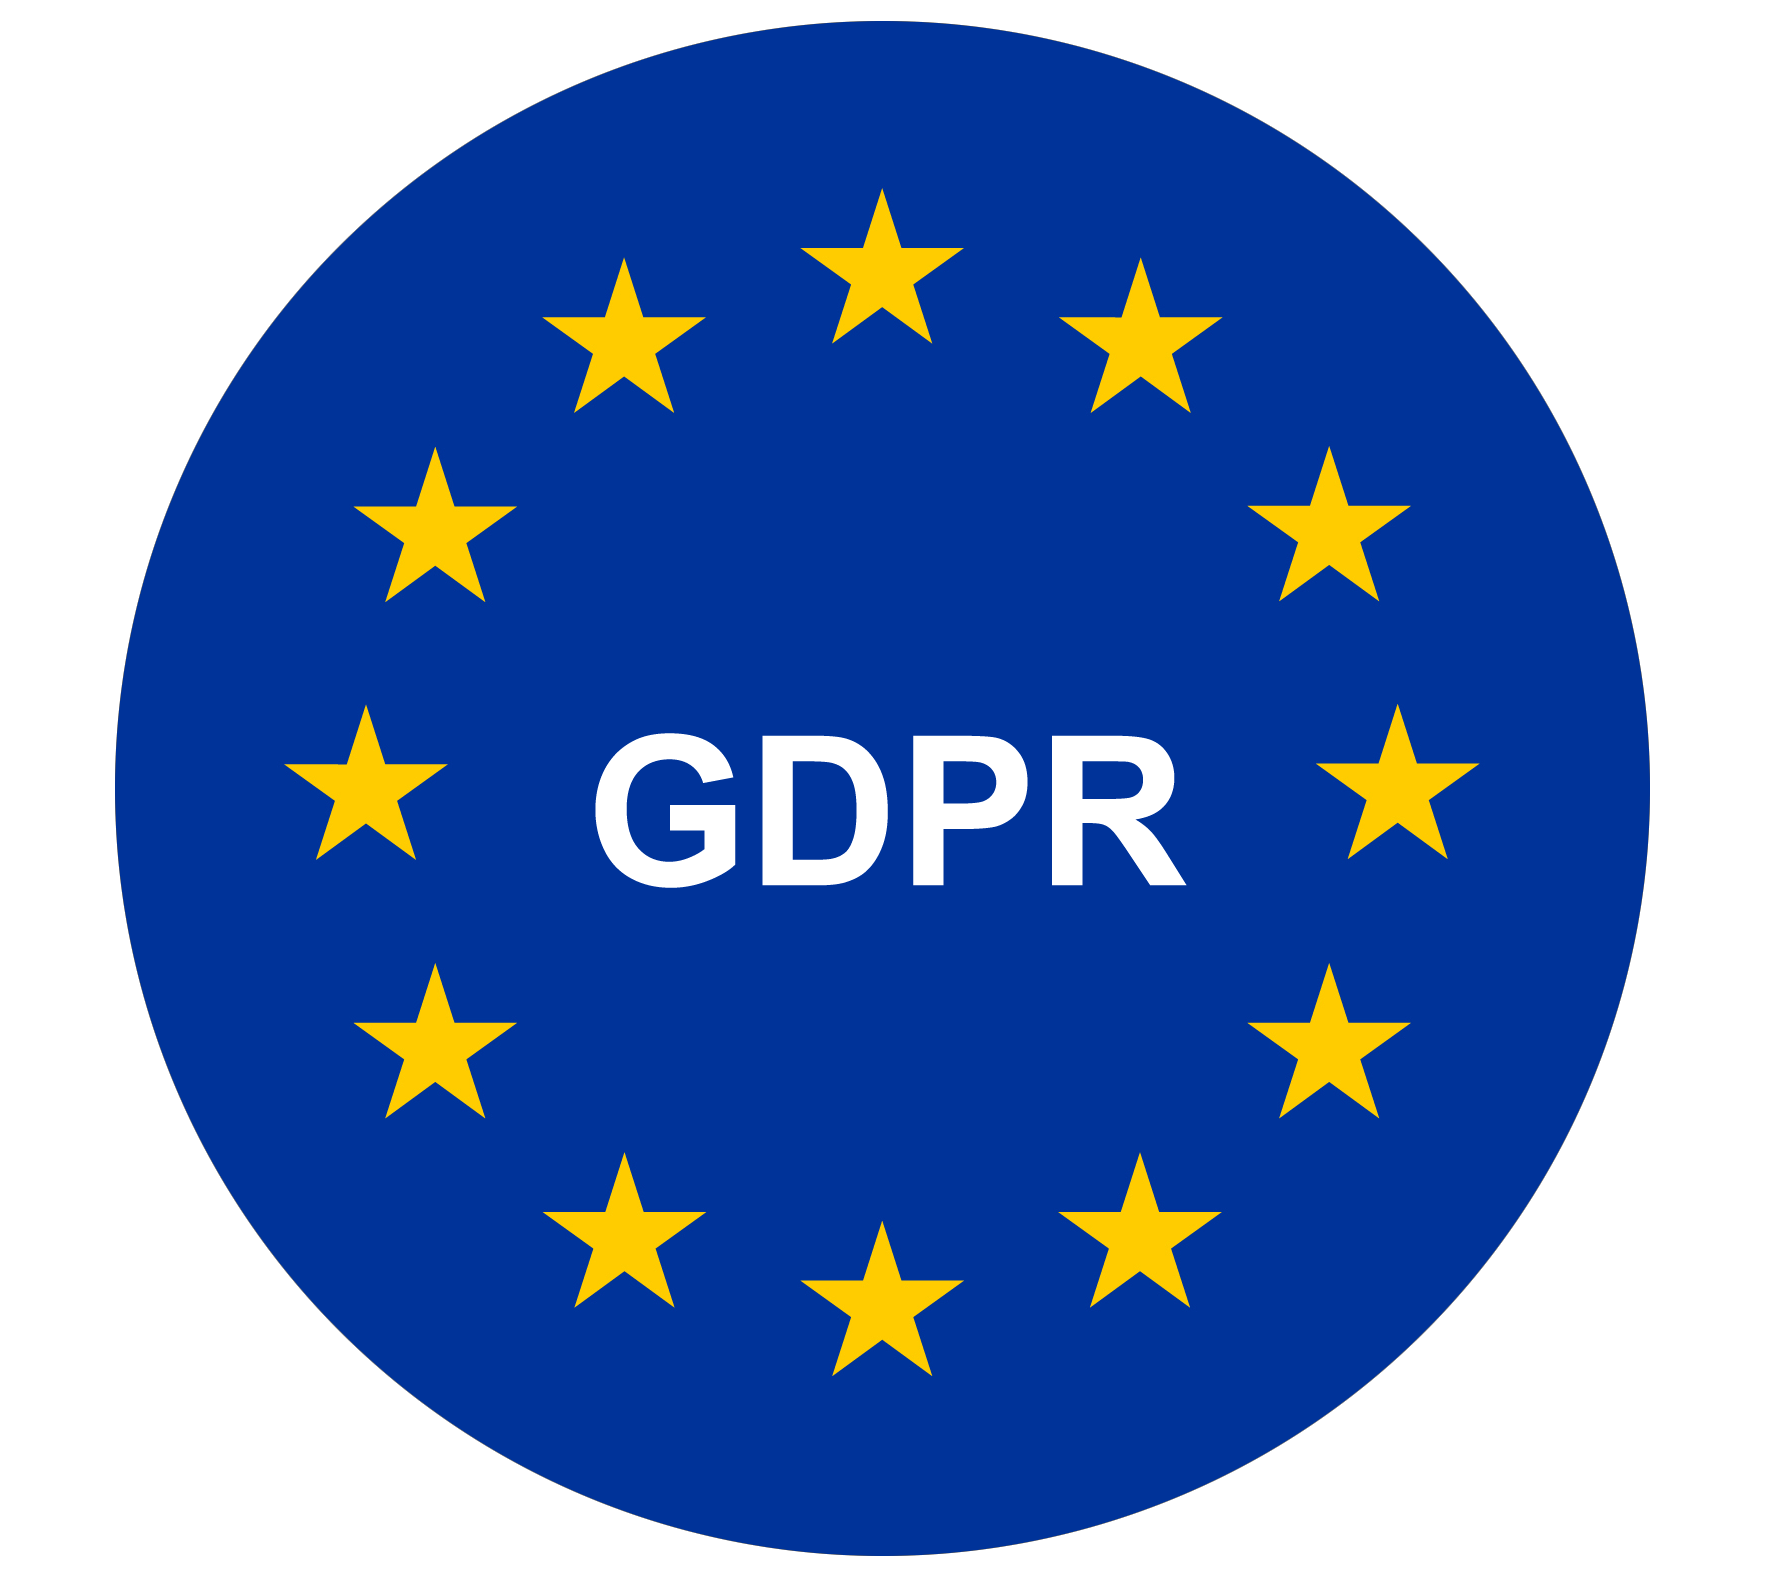 Аудит на соответствие регламенту по защите данных GDPR - изображение услуги